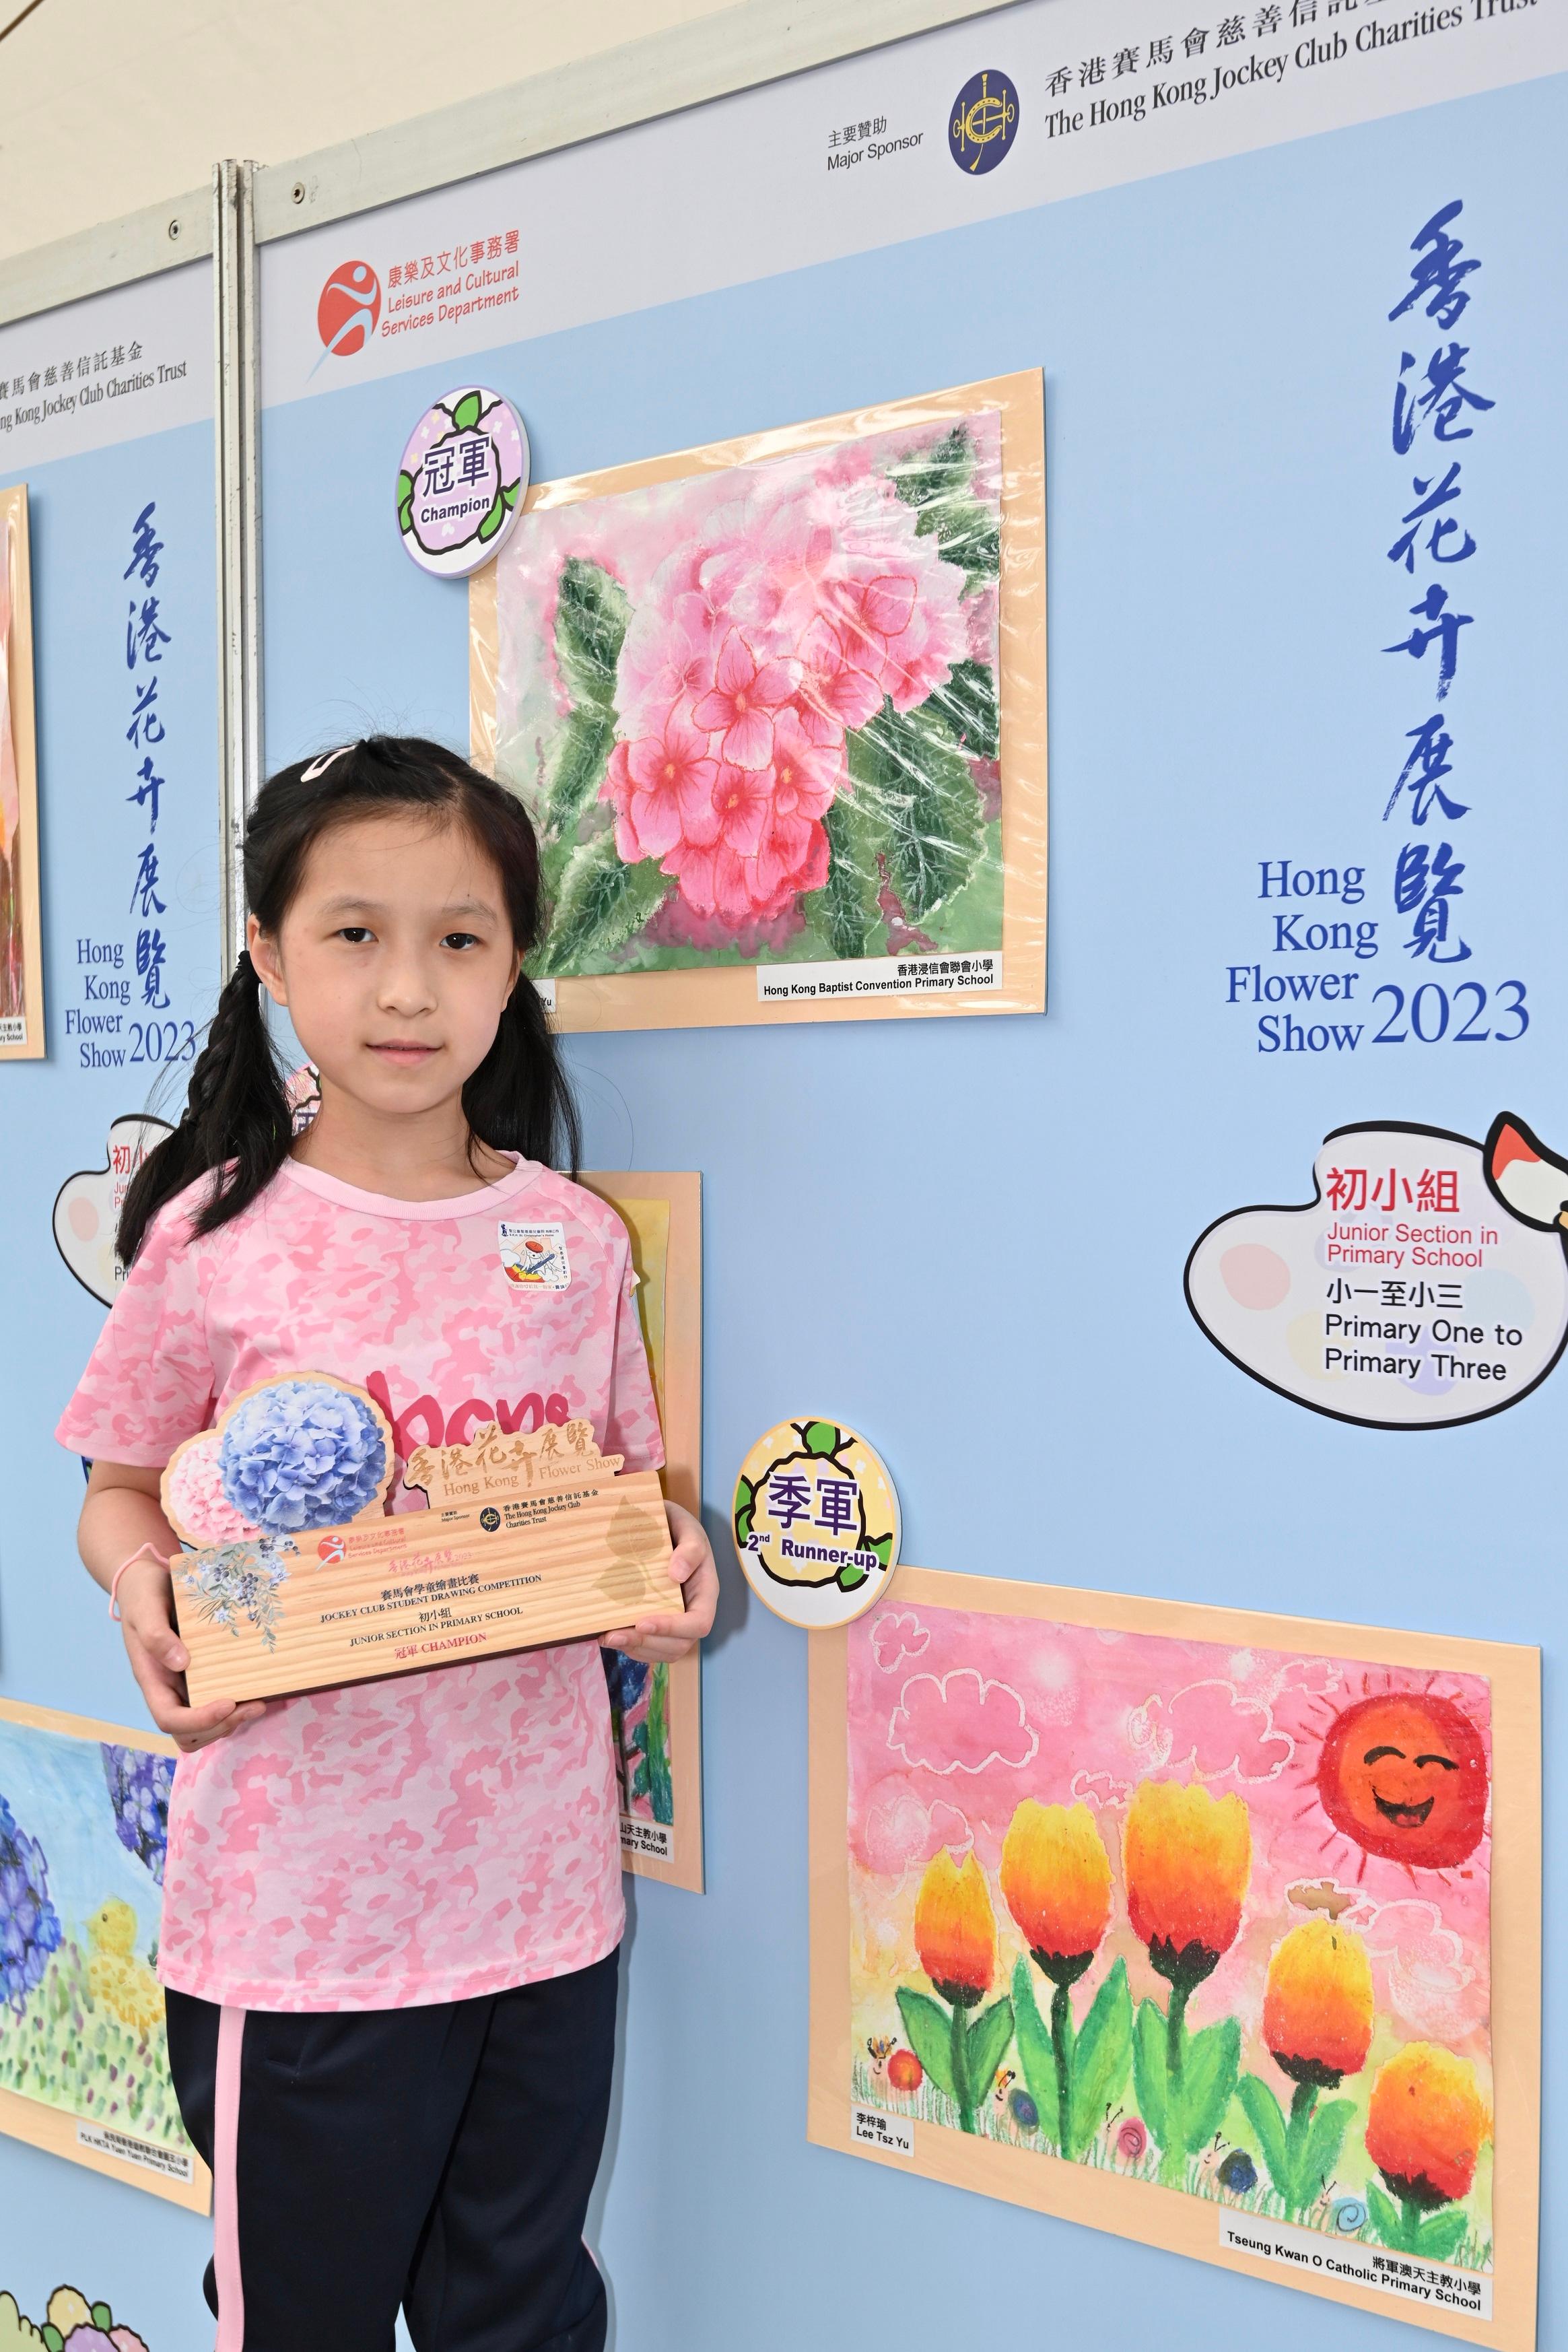 現於維多利亞公園舉行的香港花卉展覽明日（三月十九日）晚上九時閉幕。大會在展覽期間安排了多項文娛活動，當中的賽馬會學童繪畫比賽今日（三月十八日）舉行頒獎典禮，場內同時展出得獎作品。圖示初小組冠軍陳詩予及其得獎作品。